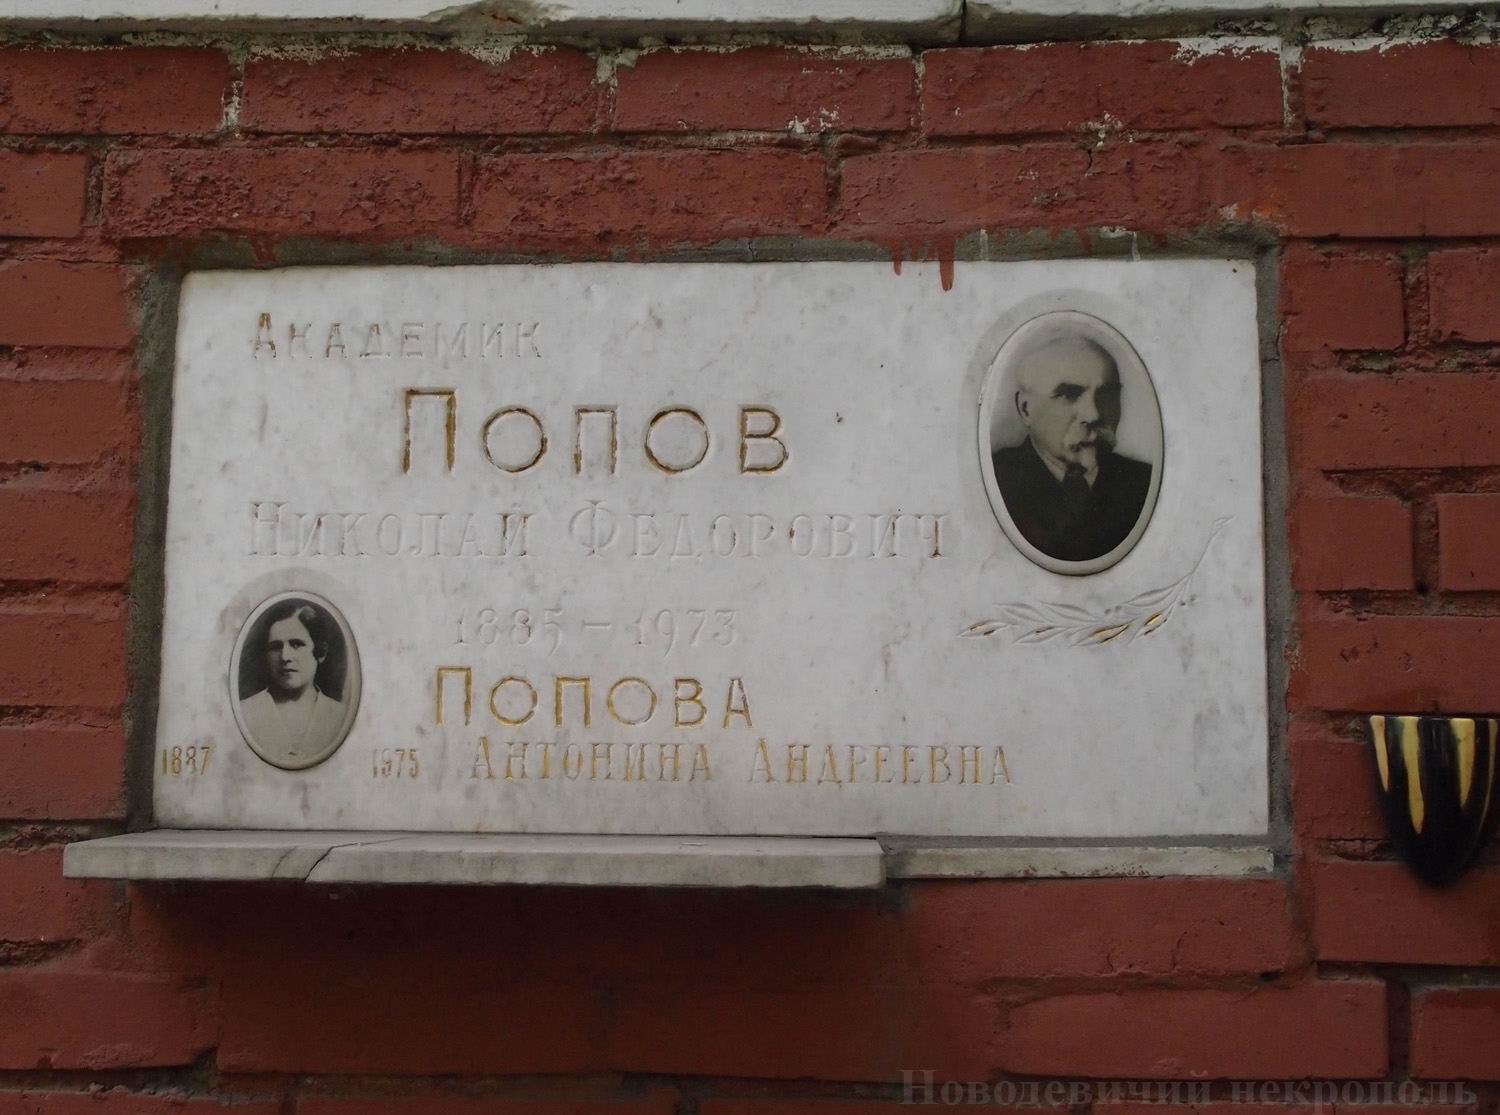 Плита на нише Попова Н.Ф. (1885-1973), на Новодевичьем кладбище (колумбарий [131]-9-1).